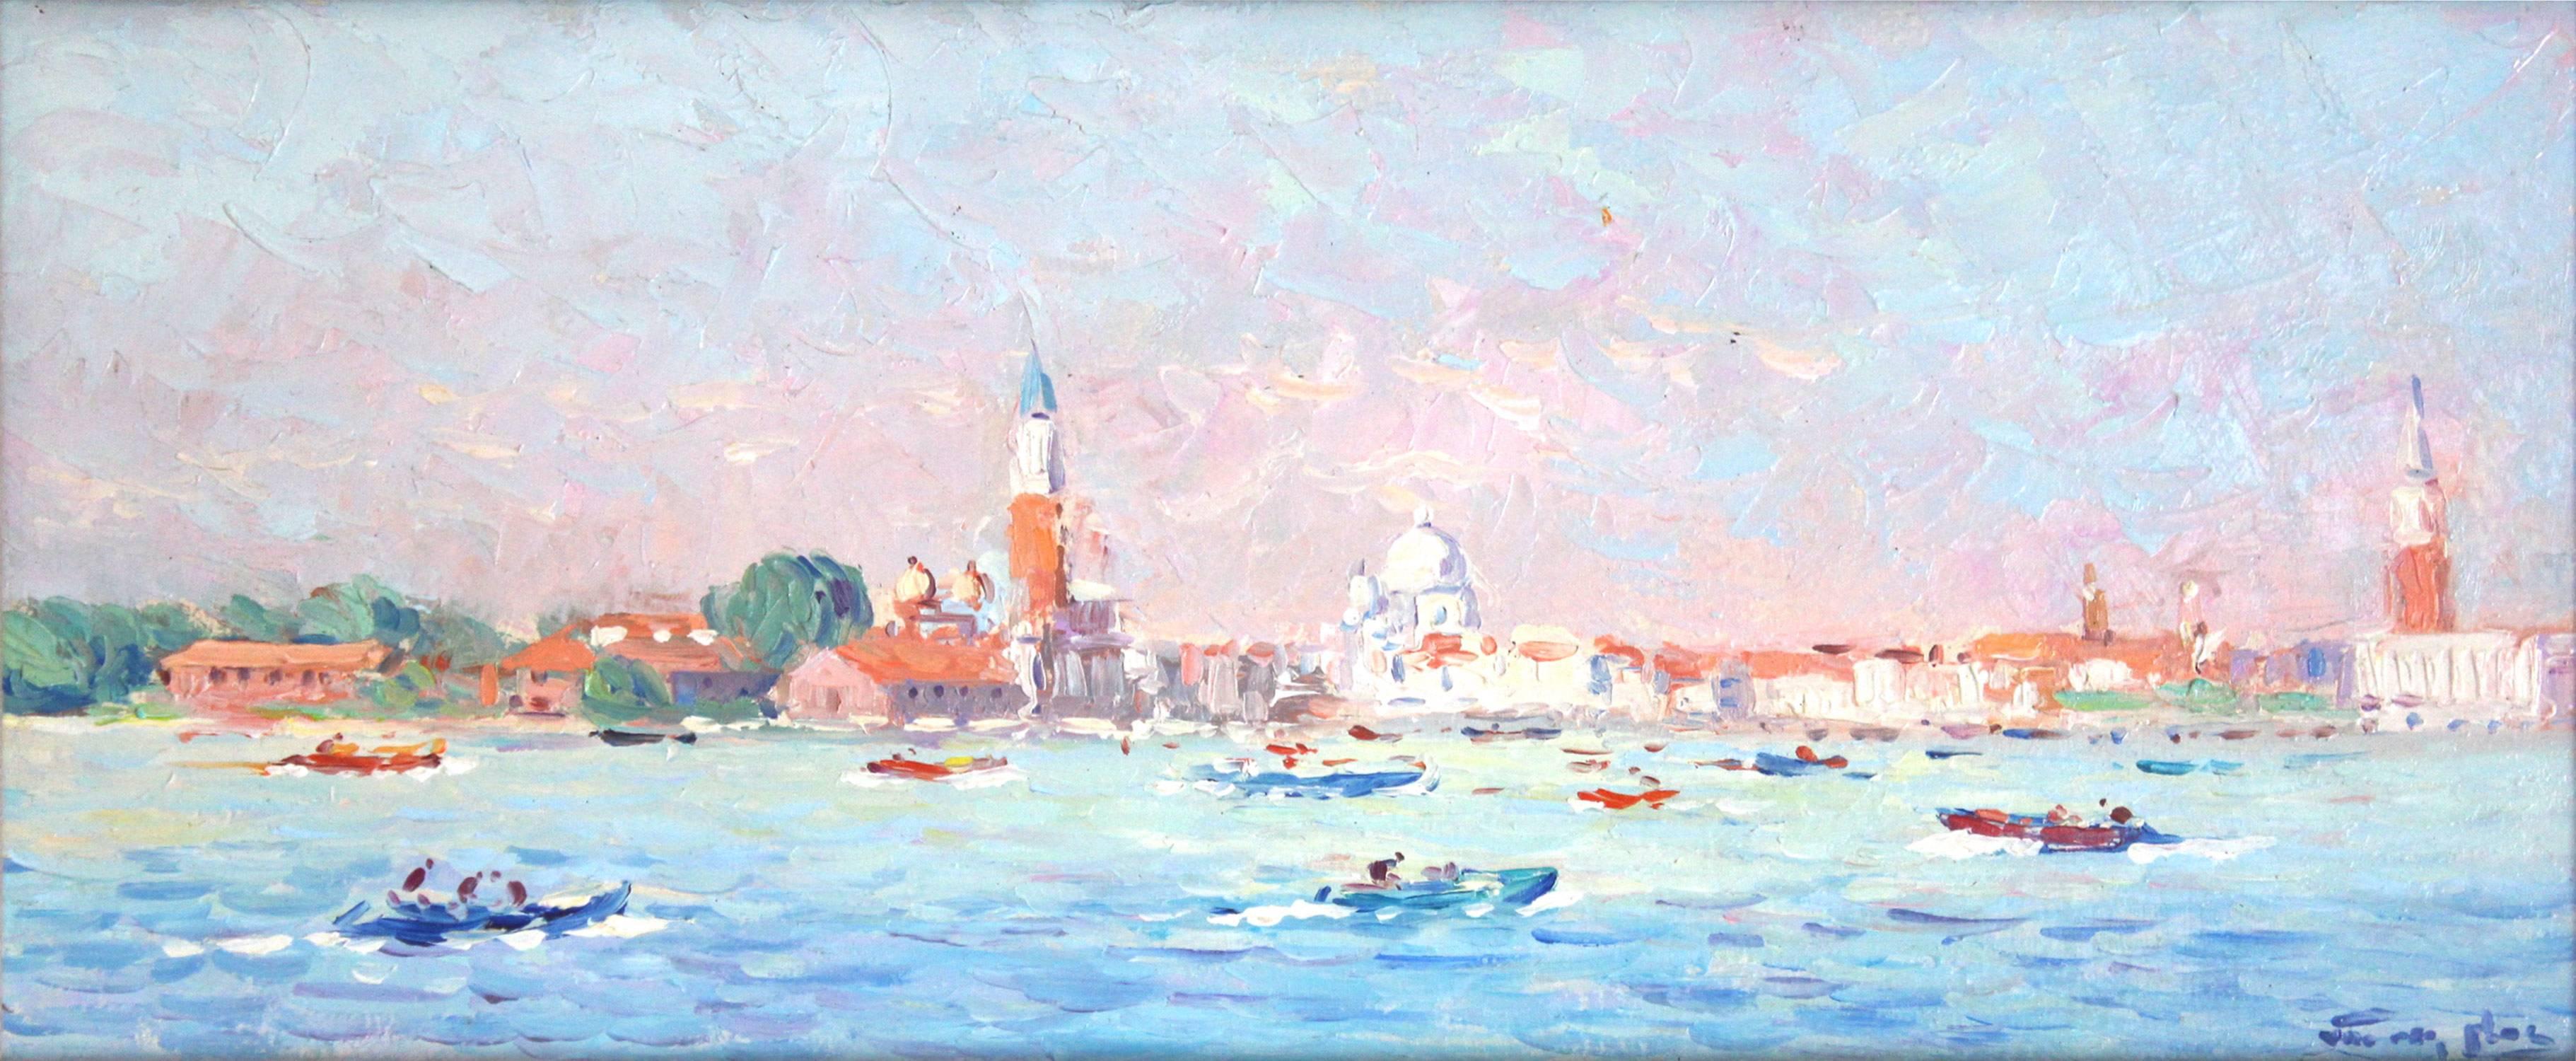 View of Venice - Painting by Niek van der Plas